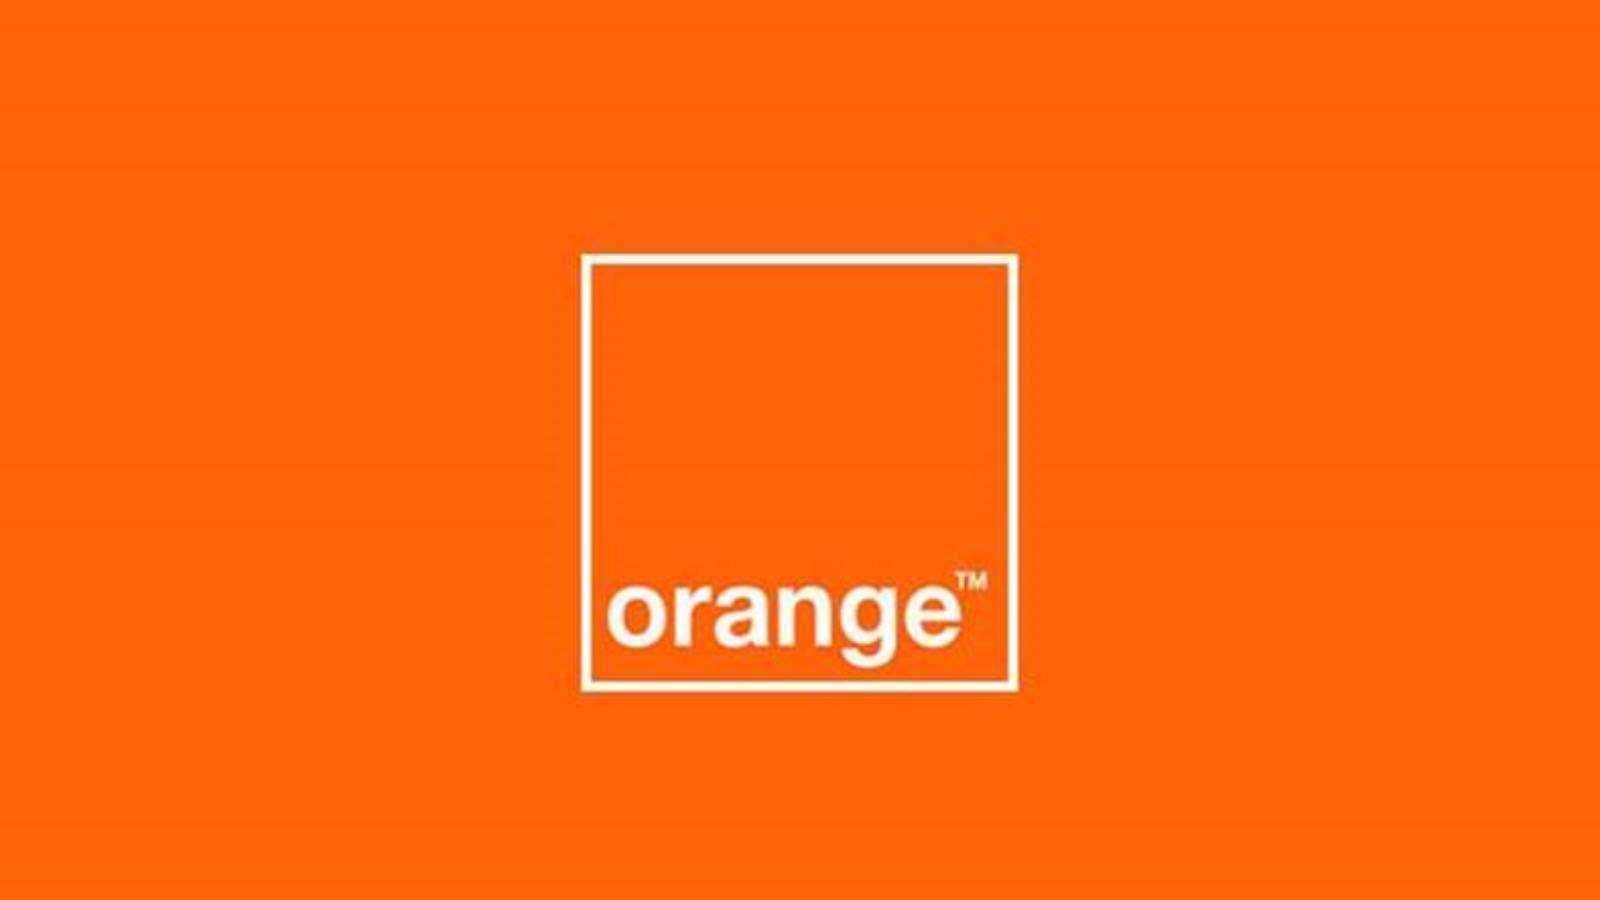 Orange julkisti vuoden 4 viimeisen neljänneksen taloudelliset tulokset